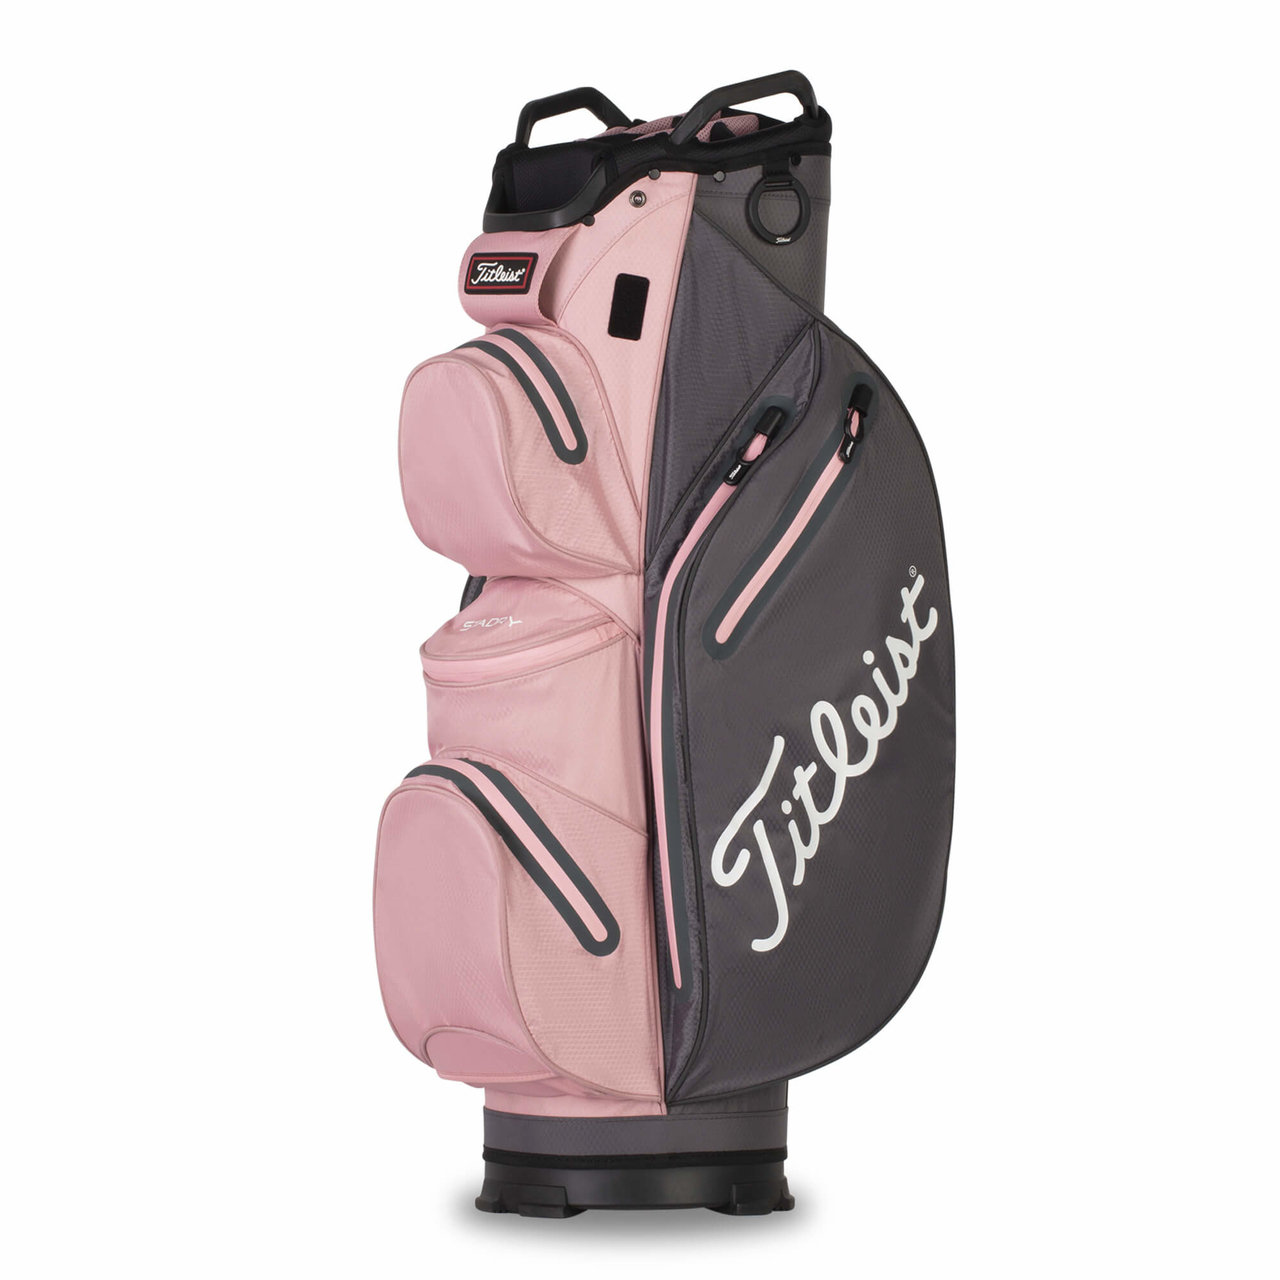 Ram Golf Accubar Cart Bag with 14 Way Full Length Divider System